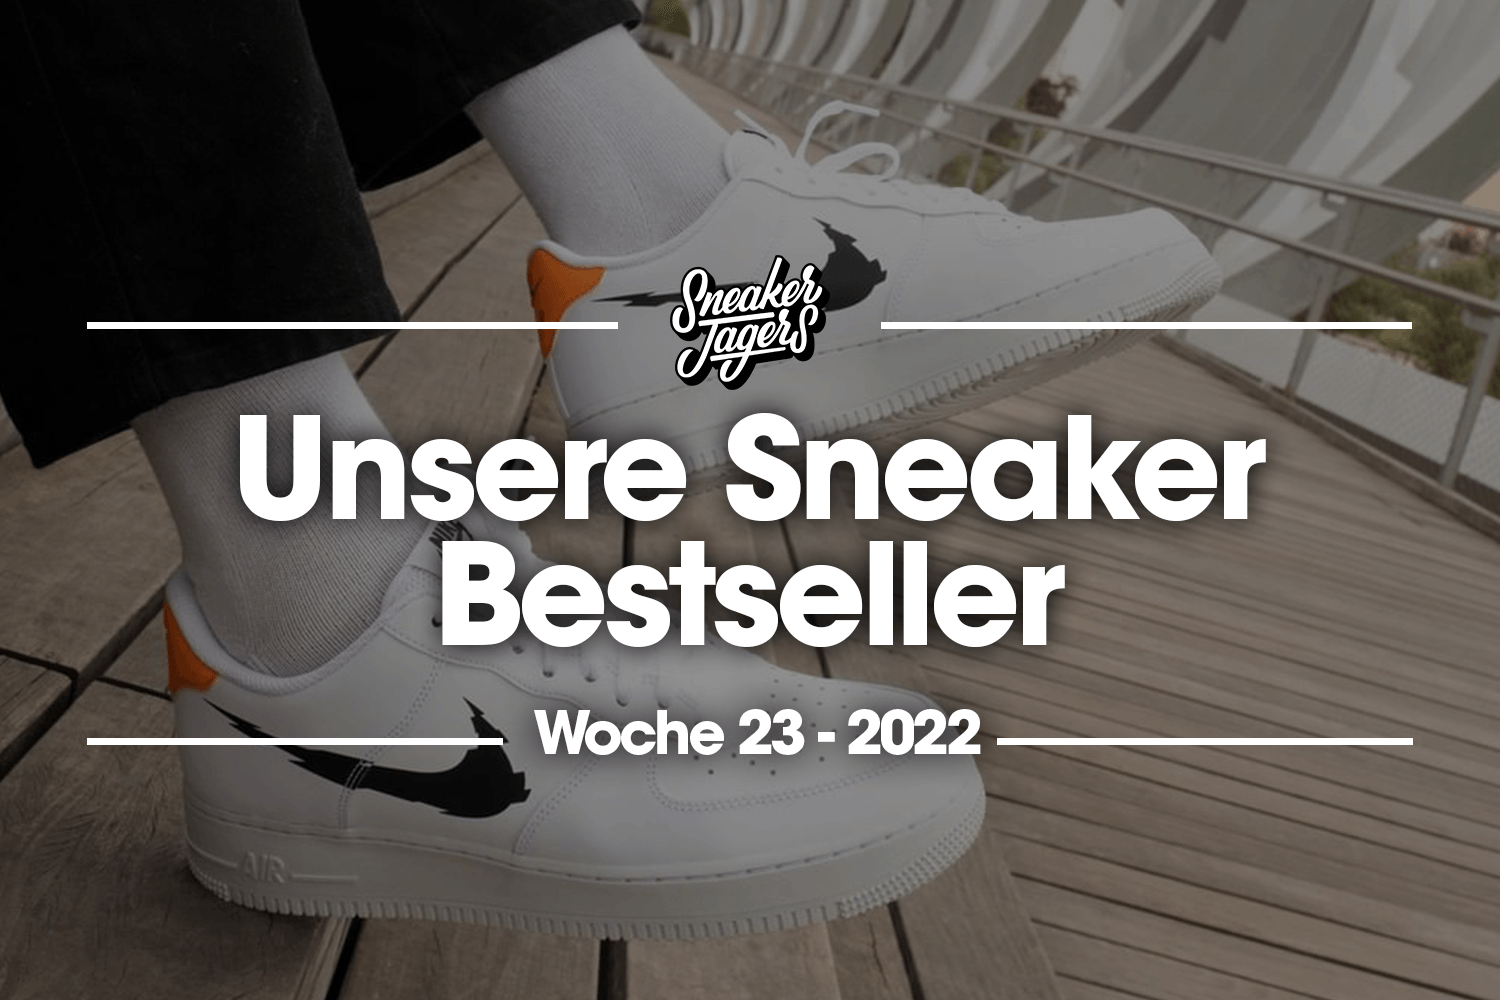 Unsere Sneaker Bestseller - Woche 23 - Das ist im Trend